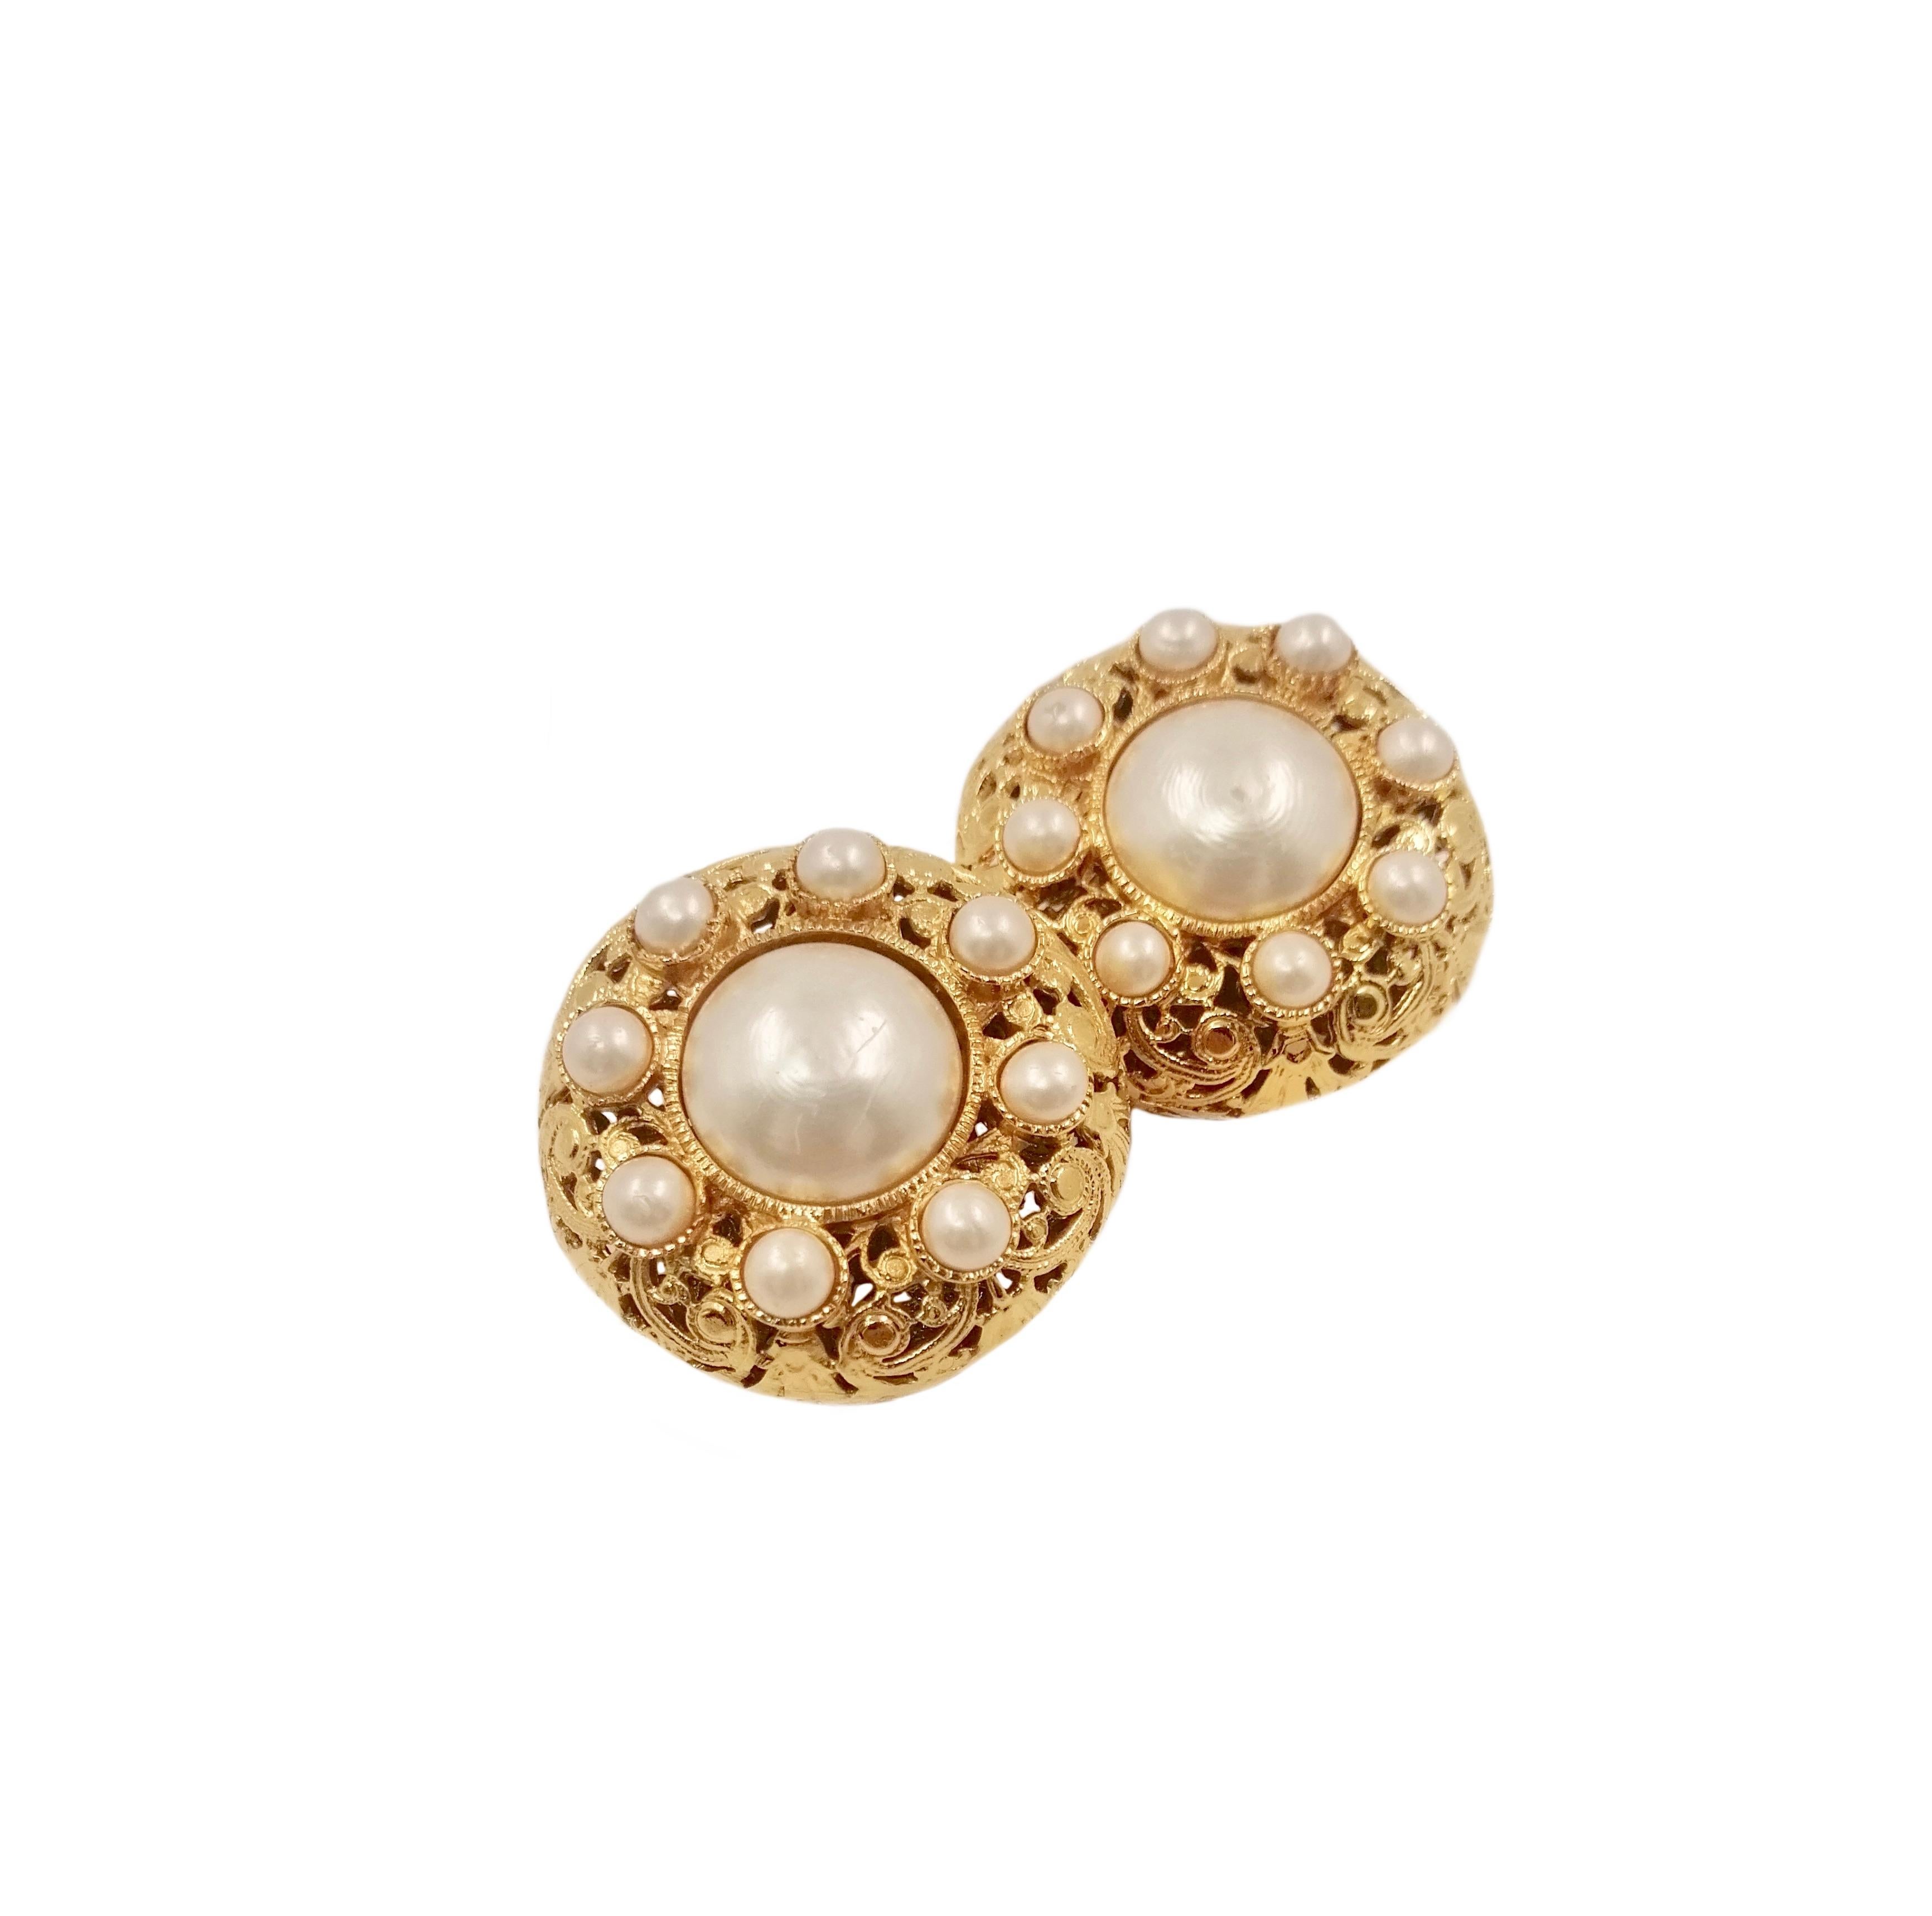 Chanel
Große Ohrringe mit Klammern.
Goldenes filigranes Metall und Perlen.
Abgerundete Form mit Clip auf der Rückseite.
Marke 